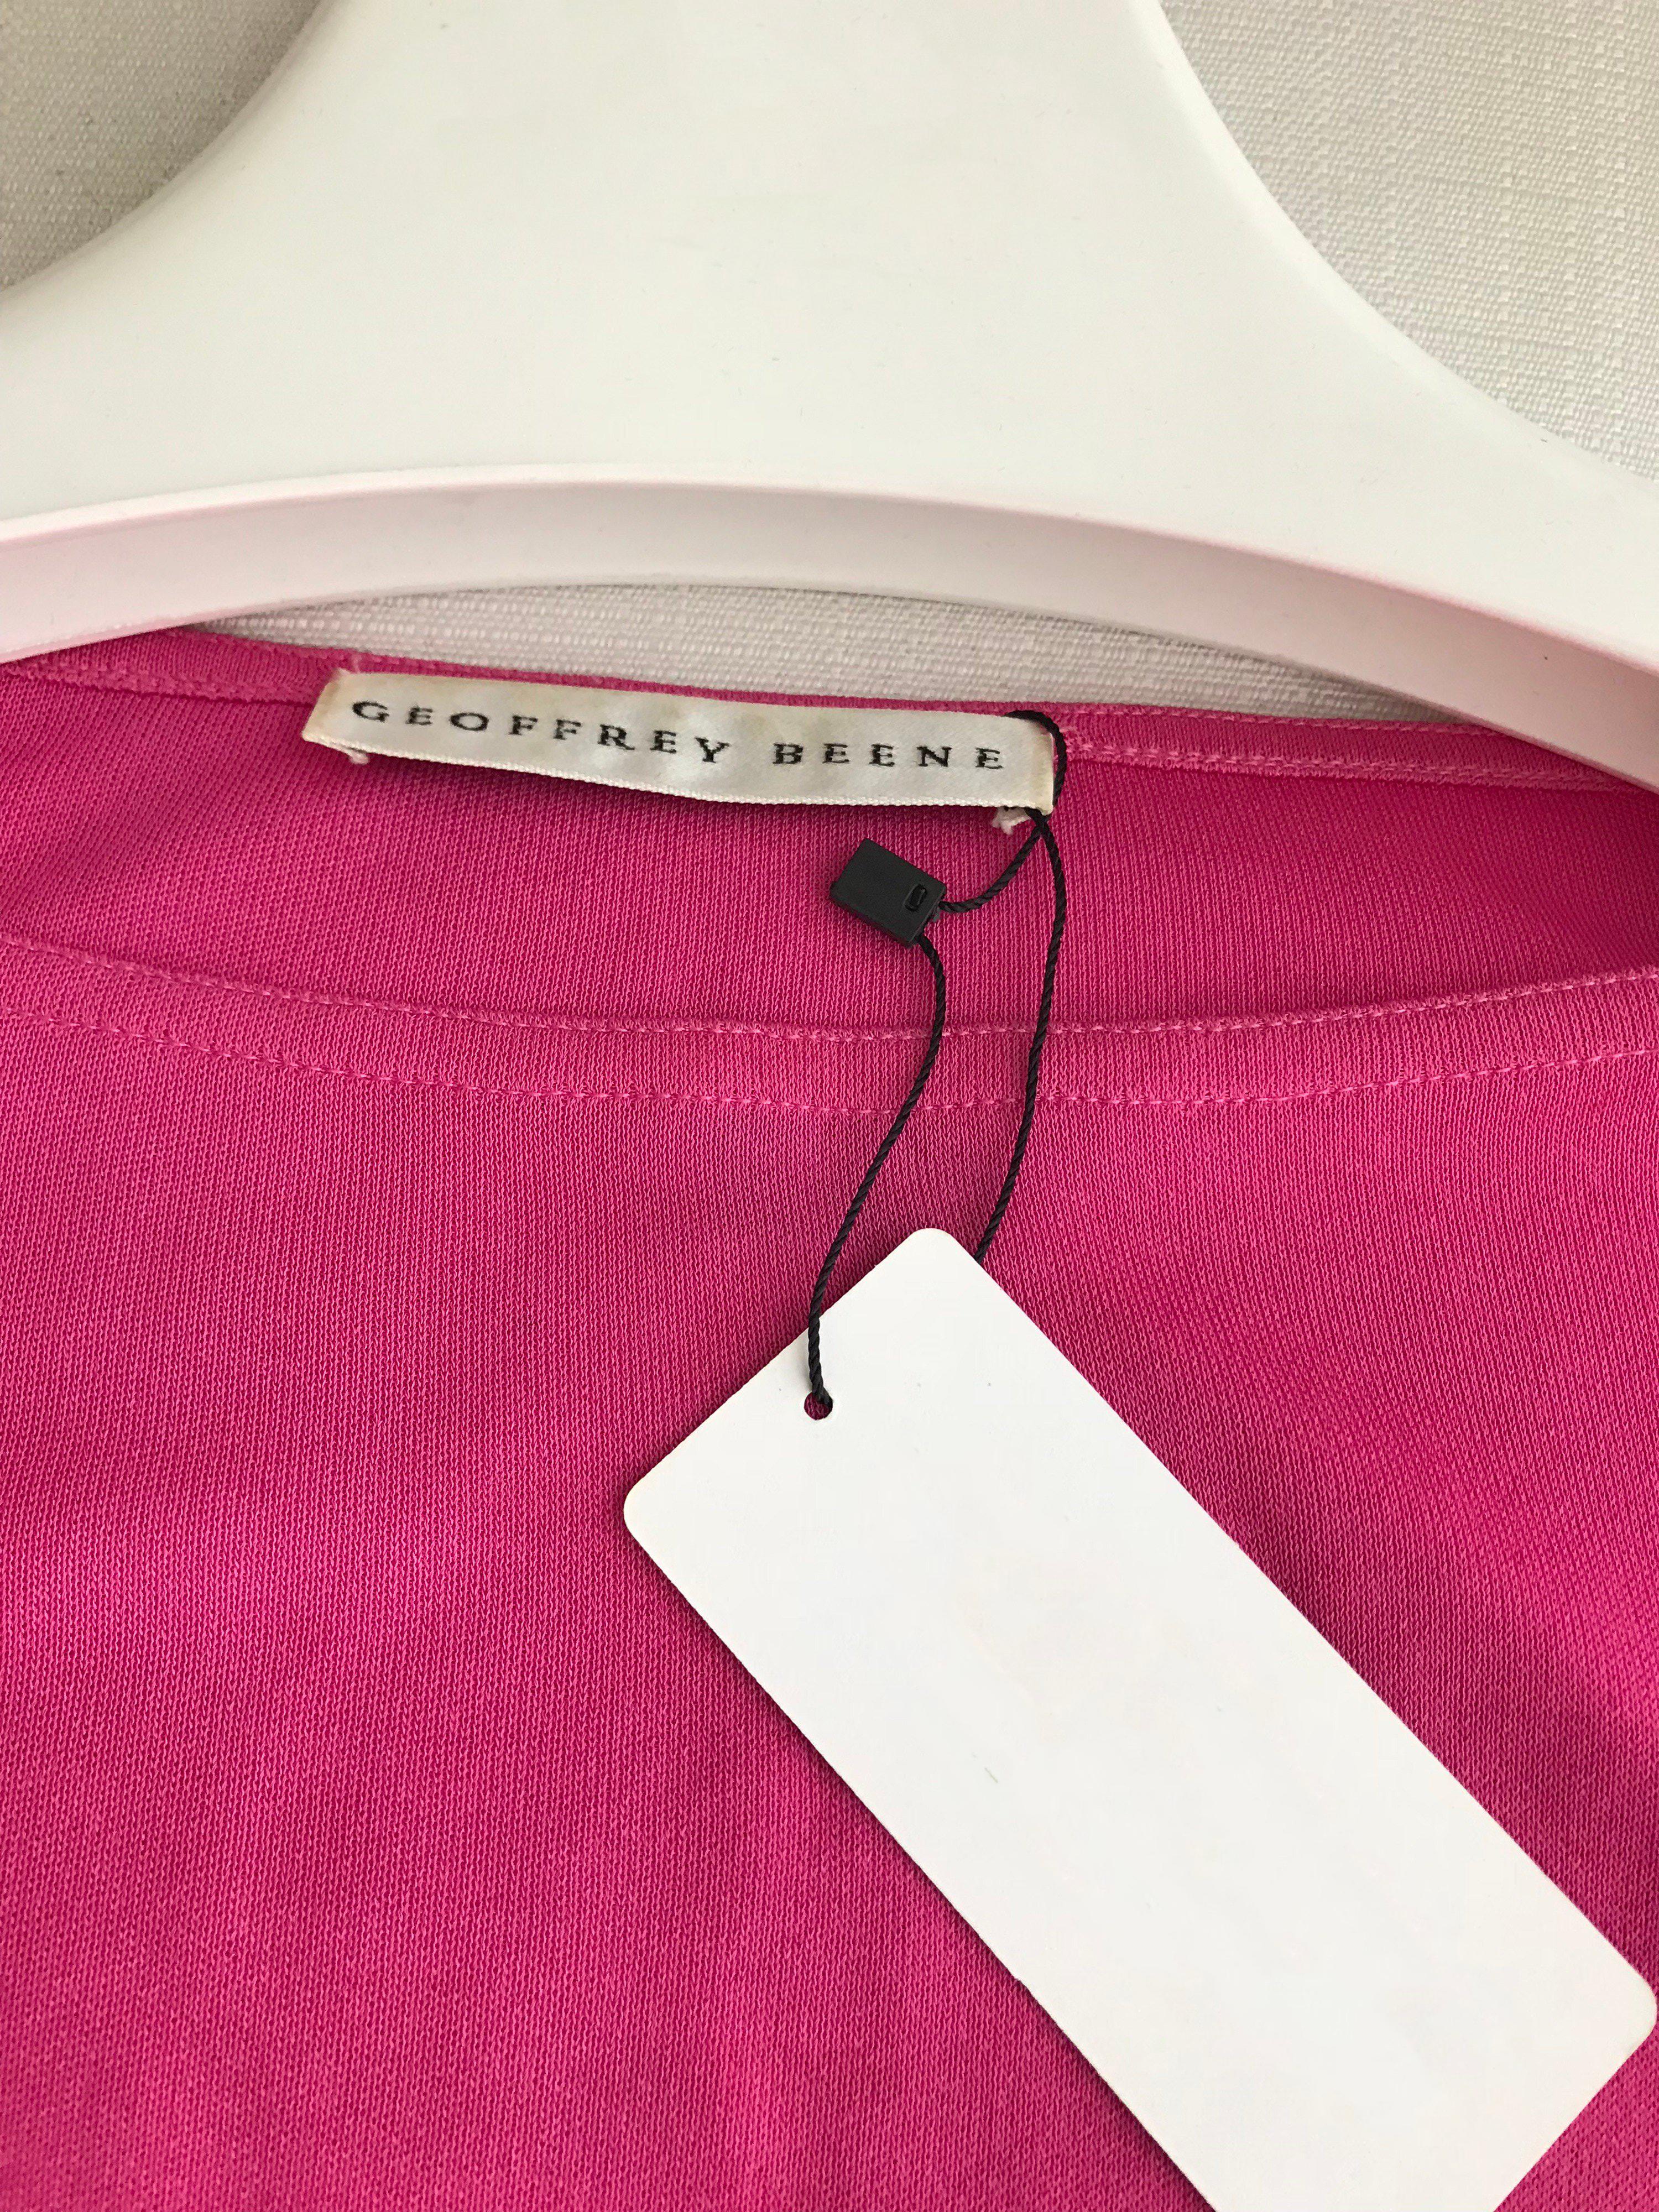 Schlichte und elegante Vintage Geoffrey Beene Langarm Bluse aus mattem rosa Jersey und Maxi Wickelrock. Größe: Klein - Mittel
Bluse Messung: 34